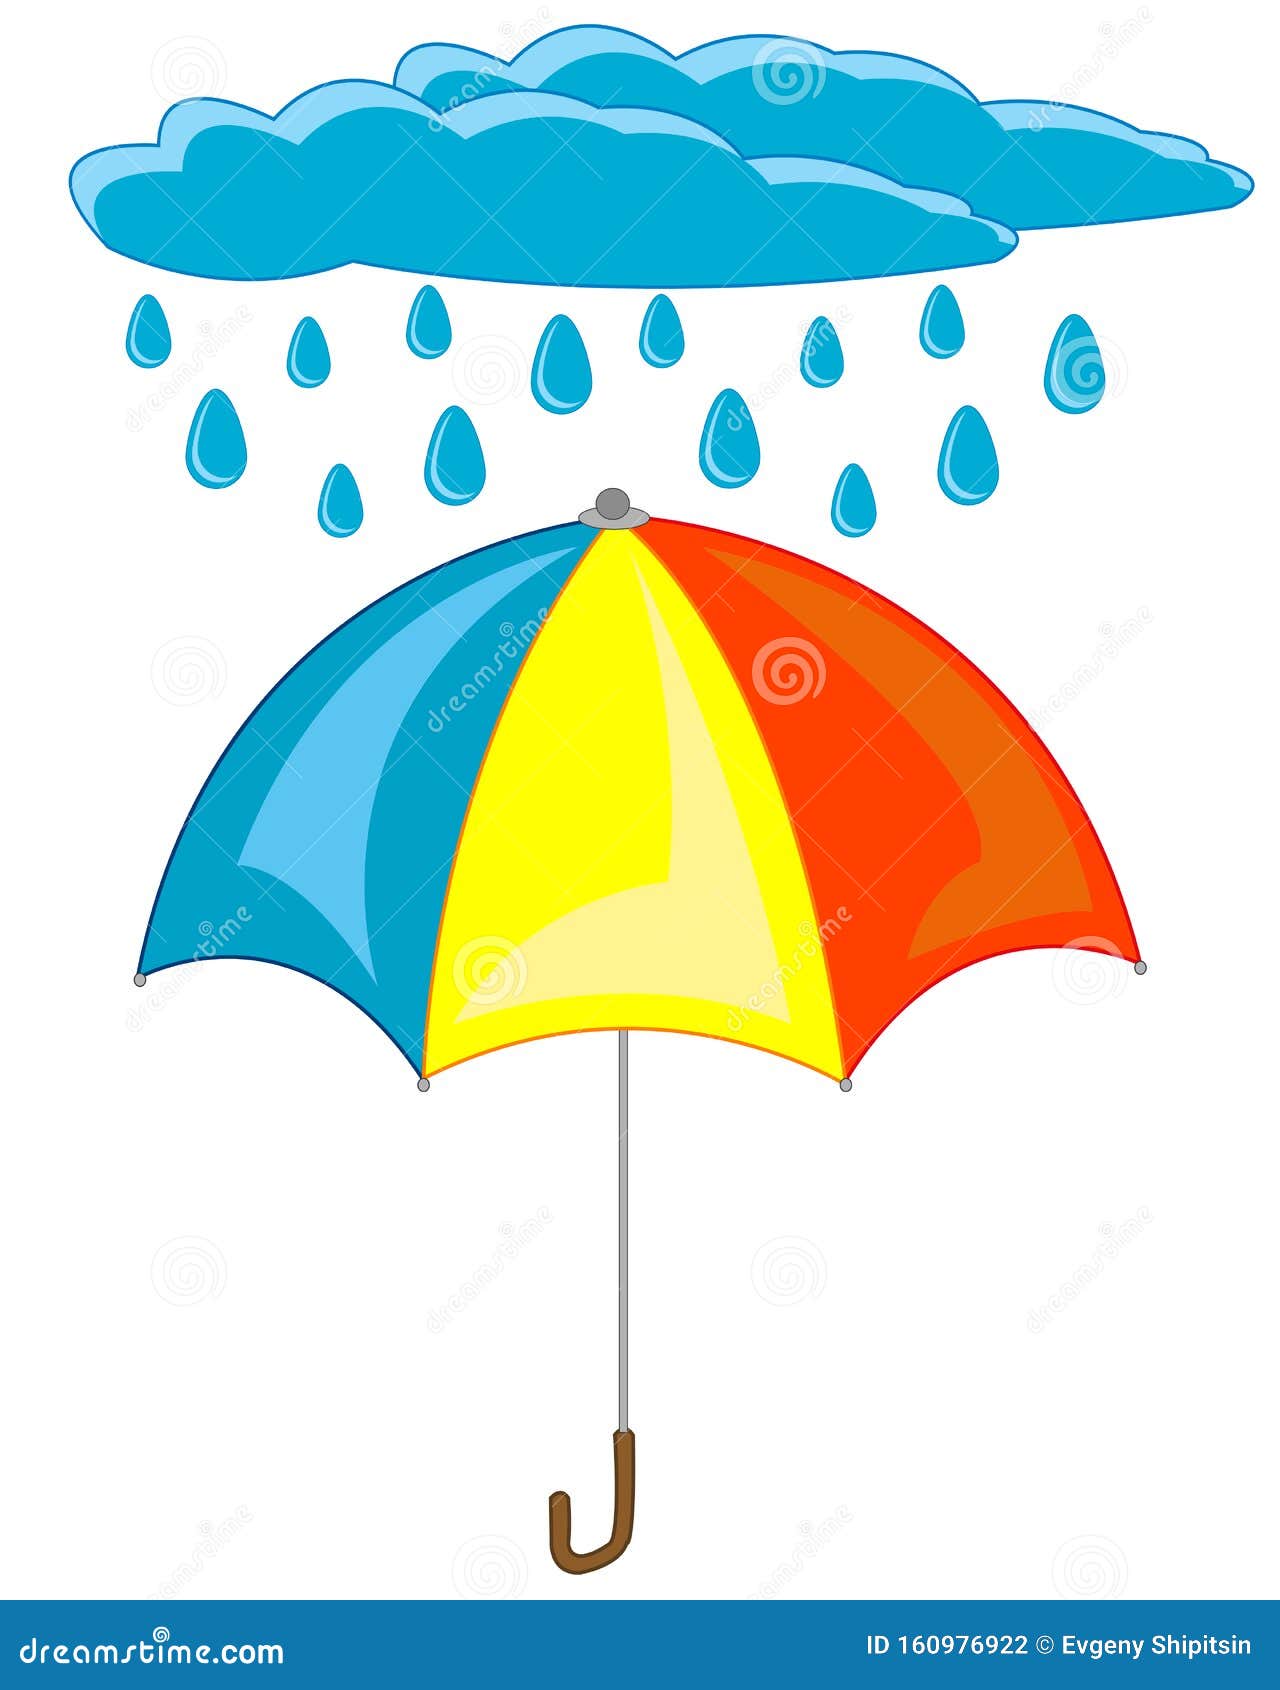 Ngày mưa làm bạn chán chường? Hãy nhấp chuột để xem chiếc ô đầy màu sắc này. Sự kết hợp hoàn hảo giữa màu xám trời mưa cùng nét vẽ đầy tinh tế sẽ làm bạn cảm thấy vui vẻ hơn ngay lập tức!